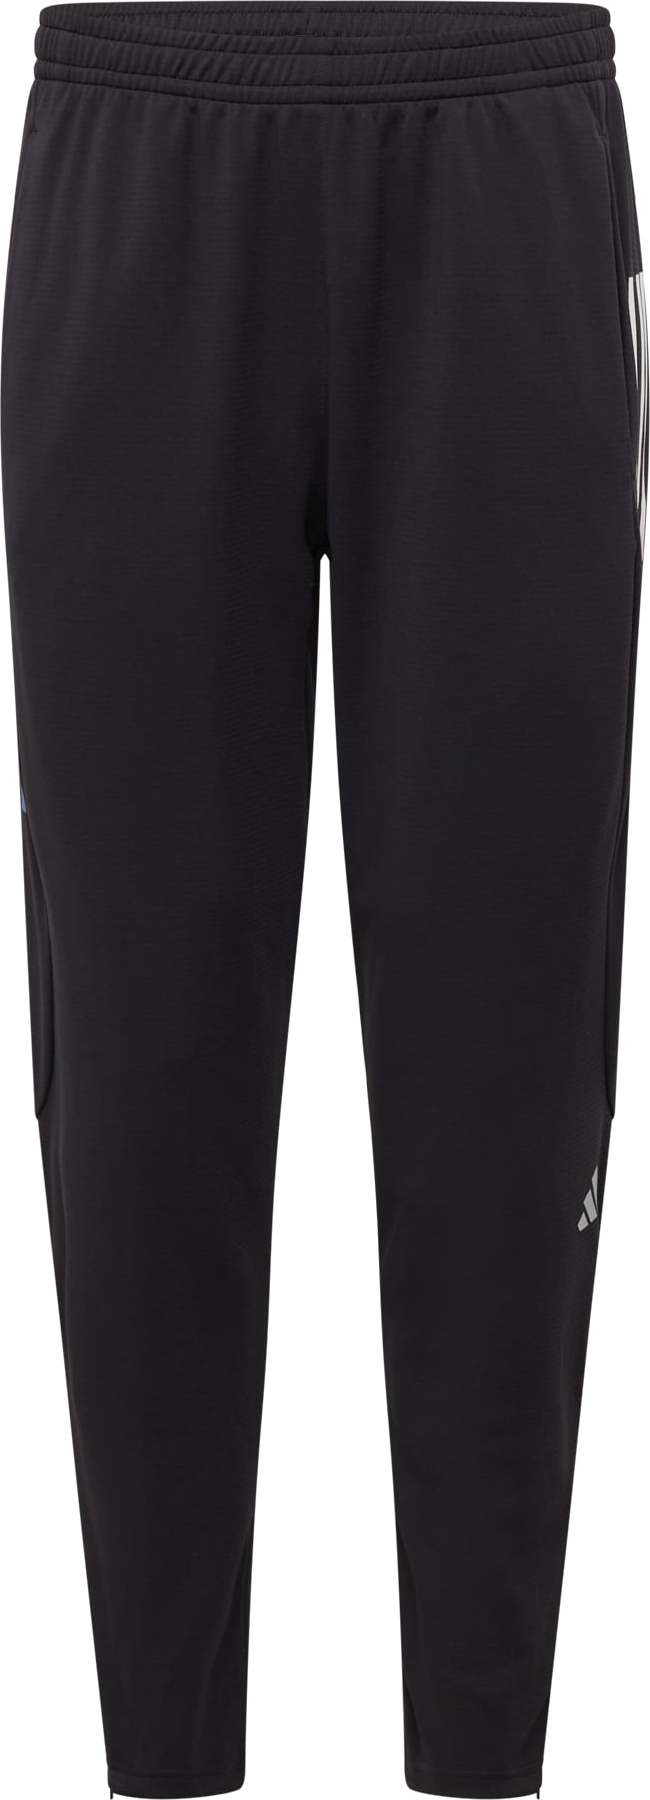 ADIDAS PERFORMANCE Sportovní kalhoty fialová / černá / bílá